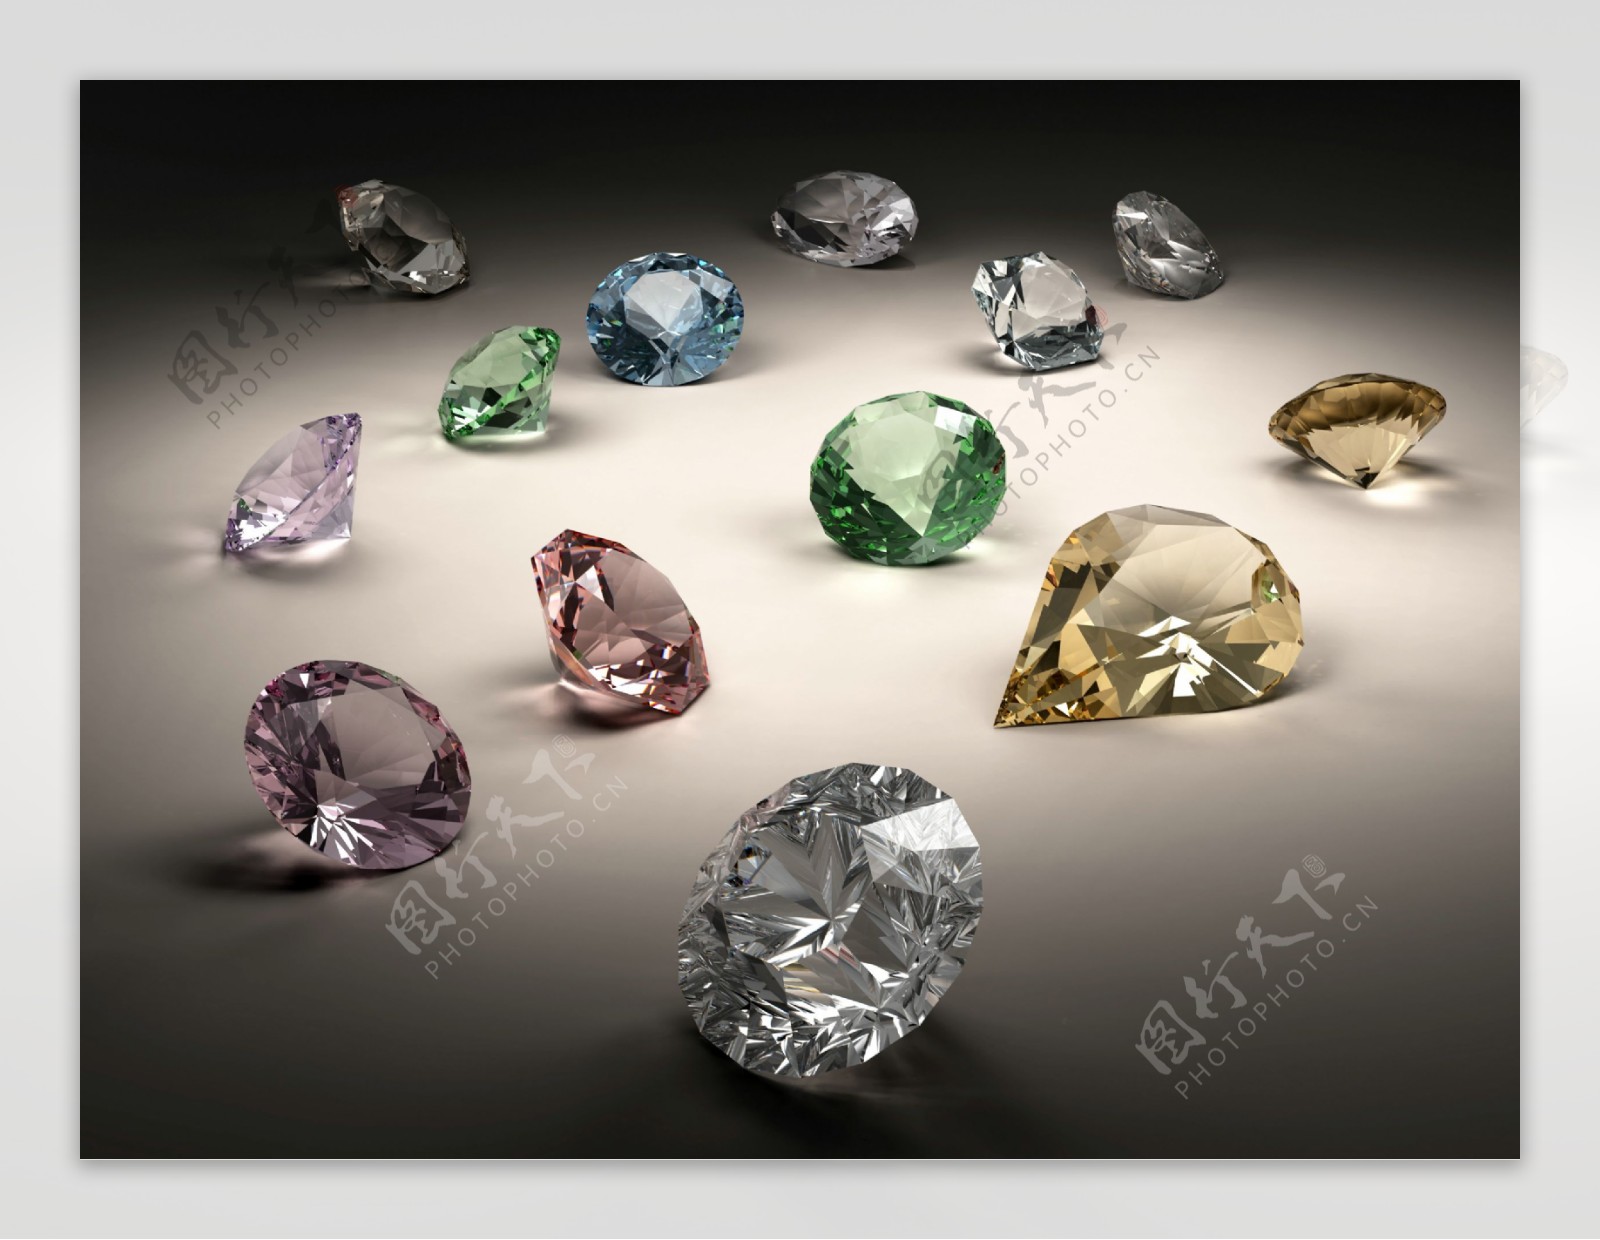 各种各样的钻石图片